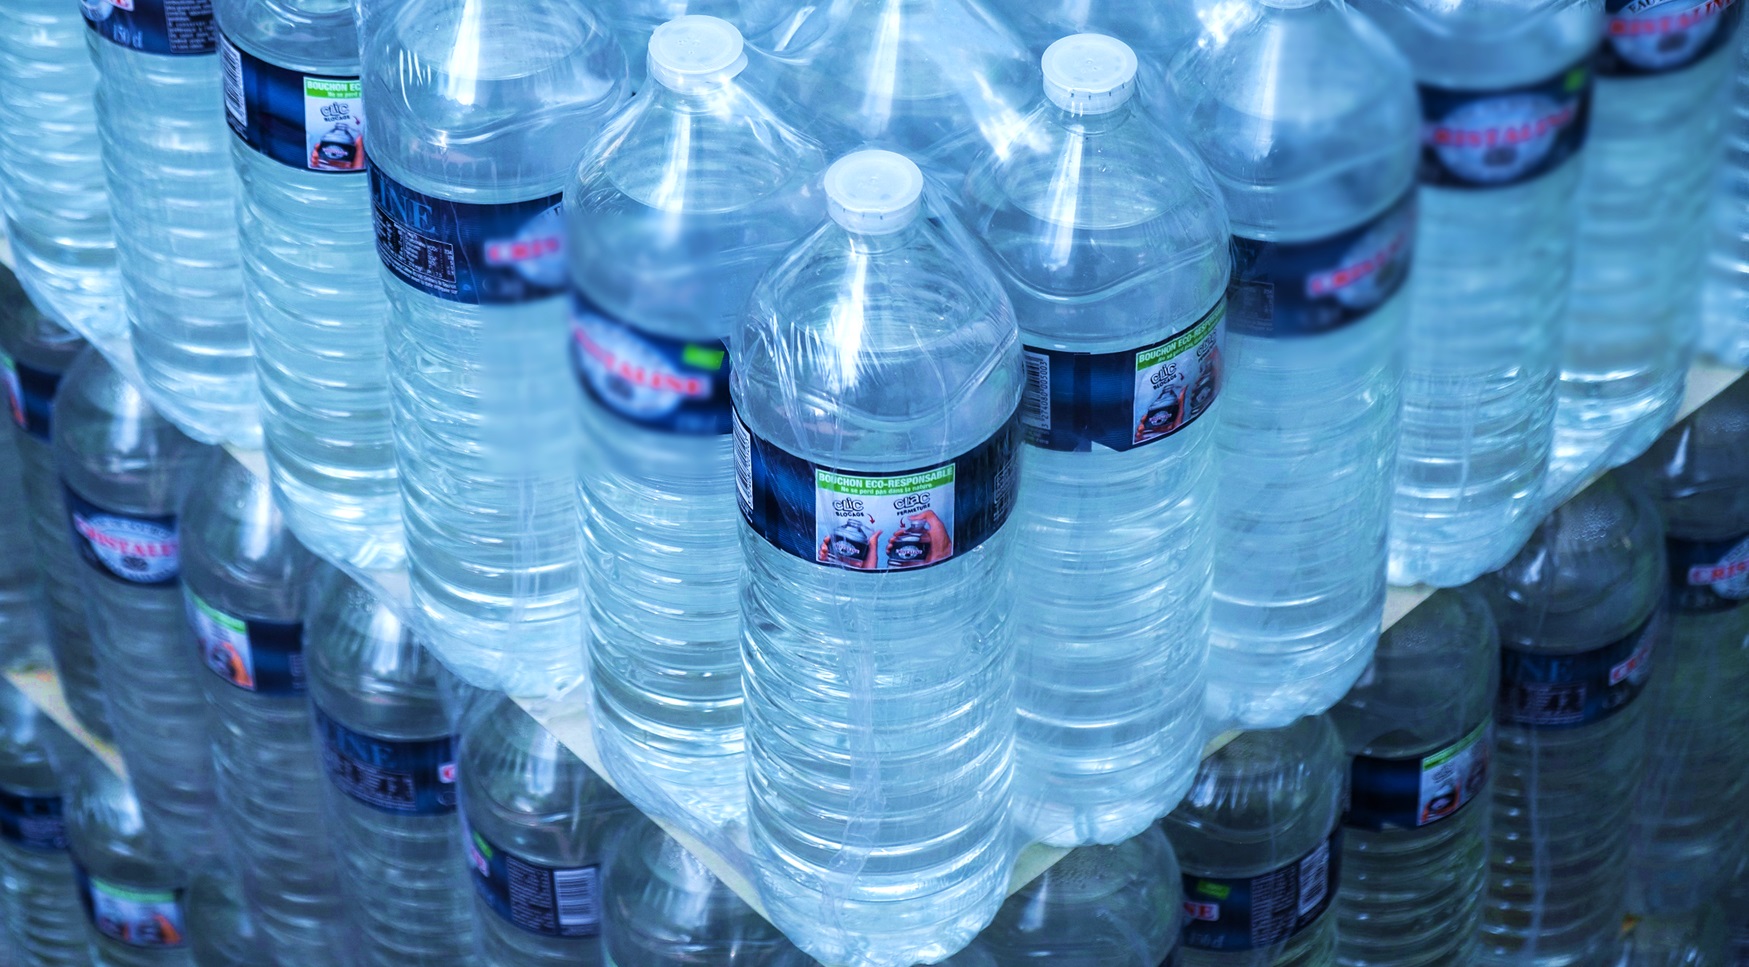 Botella de agua, que costaría 17.000 pesos en El Dorado.